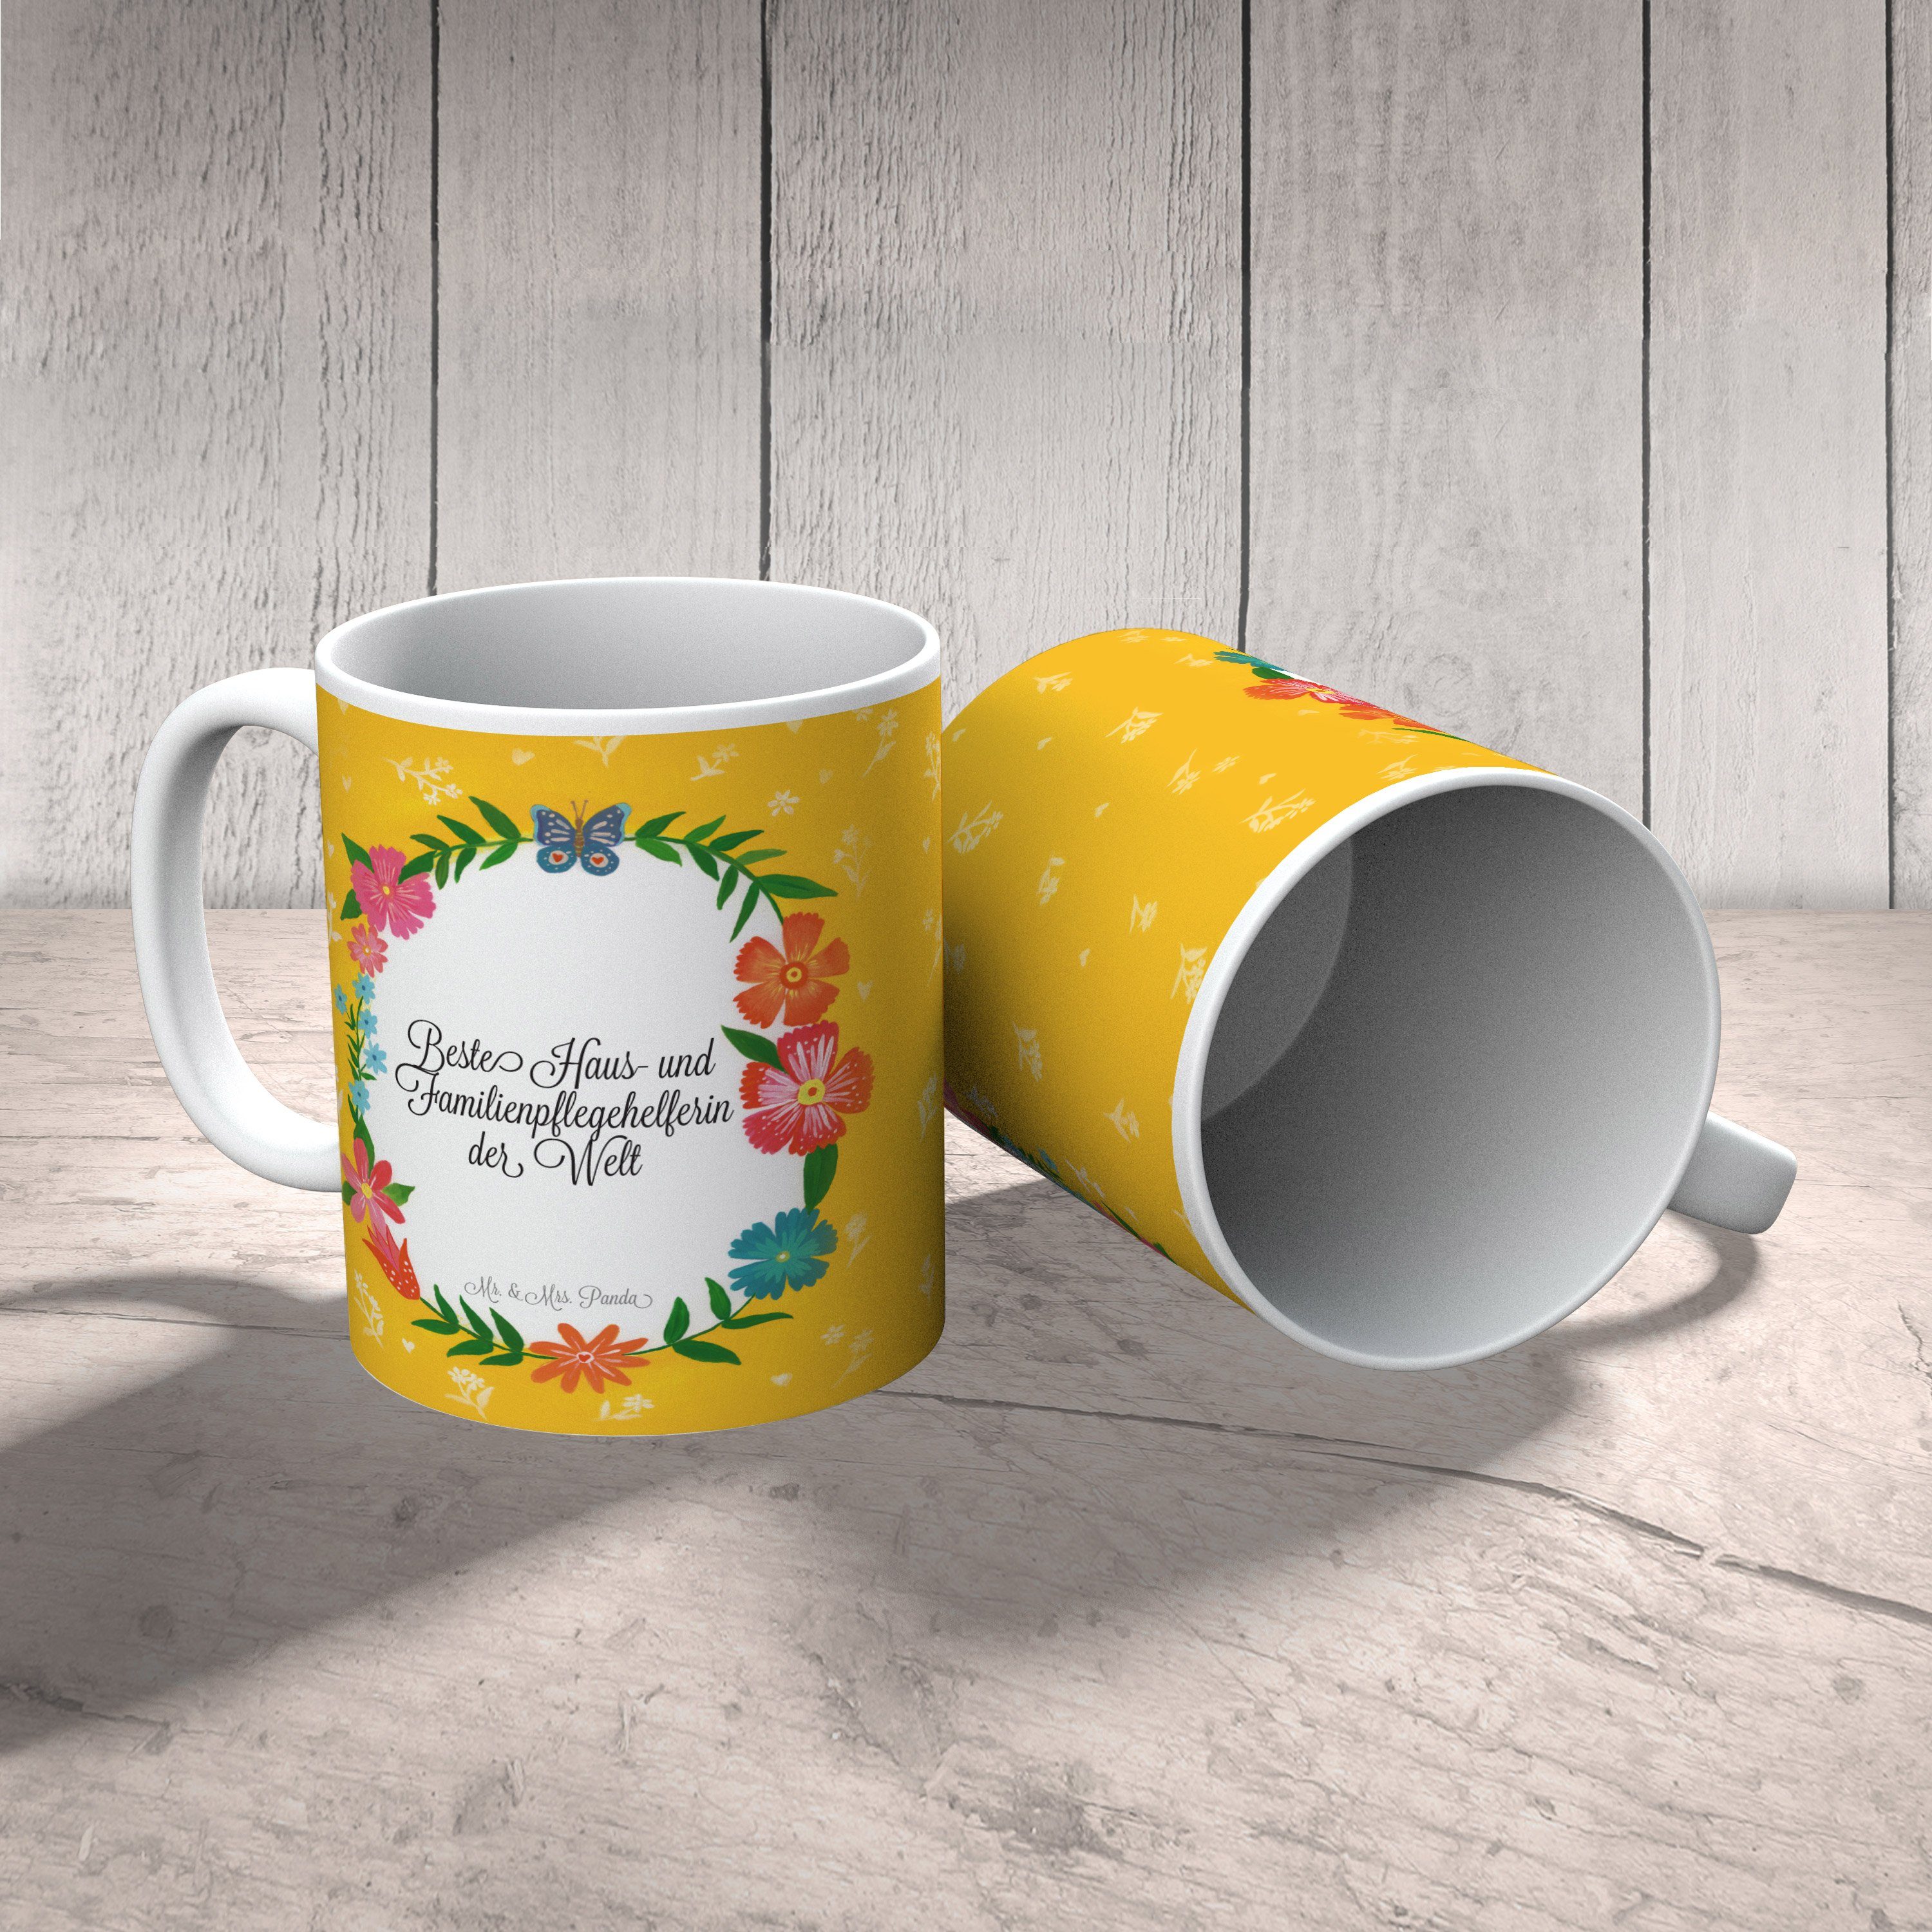 Tasse Geschenk, Motiv, Gratulation, Mrs. Panda Familienpflegehelferin Tasse & Mr. Haus- und Keramik -